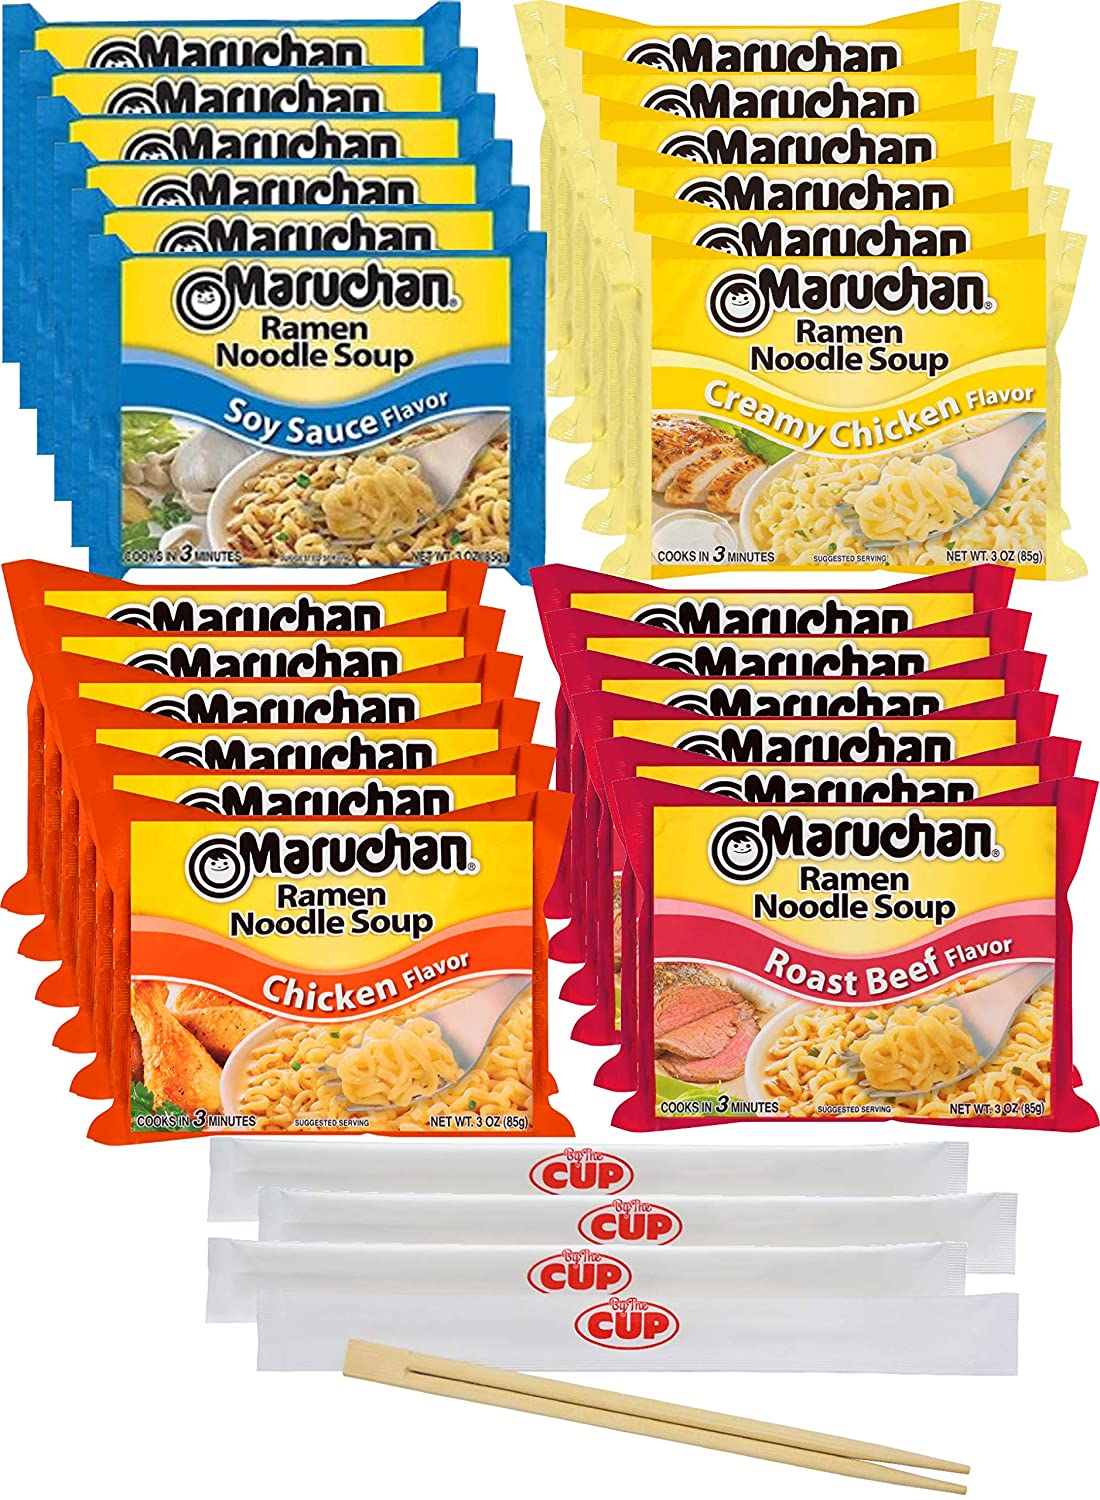 Maruchan Ramen Pork Flavor Noodle Soup 24 Count 3 oz